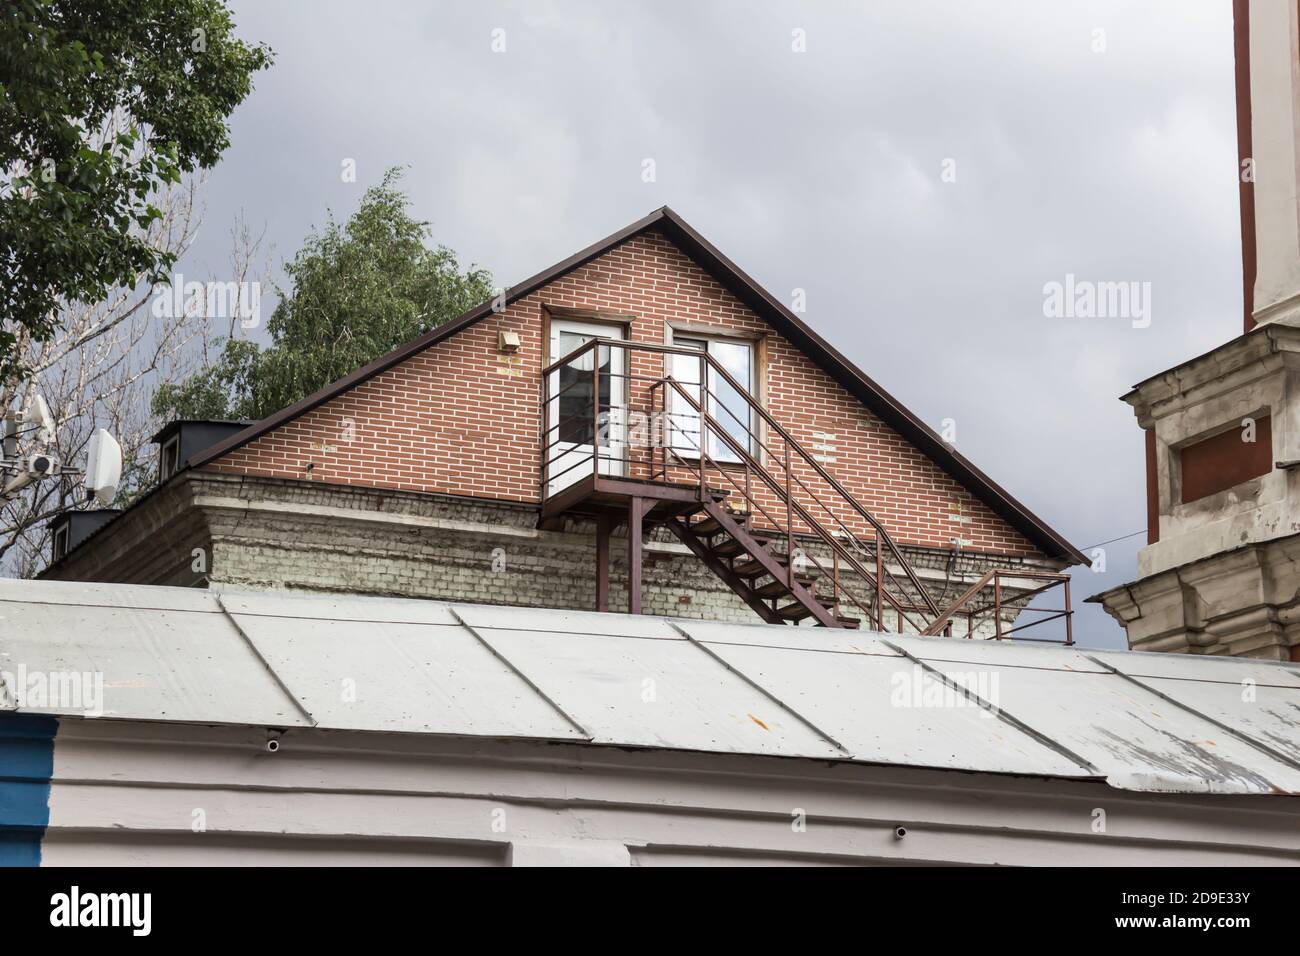 Un escalier mène à l'entrée du grenier. Espace de vie sur le toit d'une maison.photo pour un site sur l'architecture et la restauration des maisons. Banque D'Images